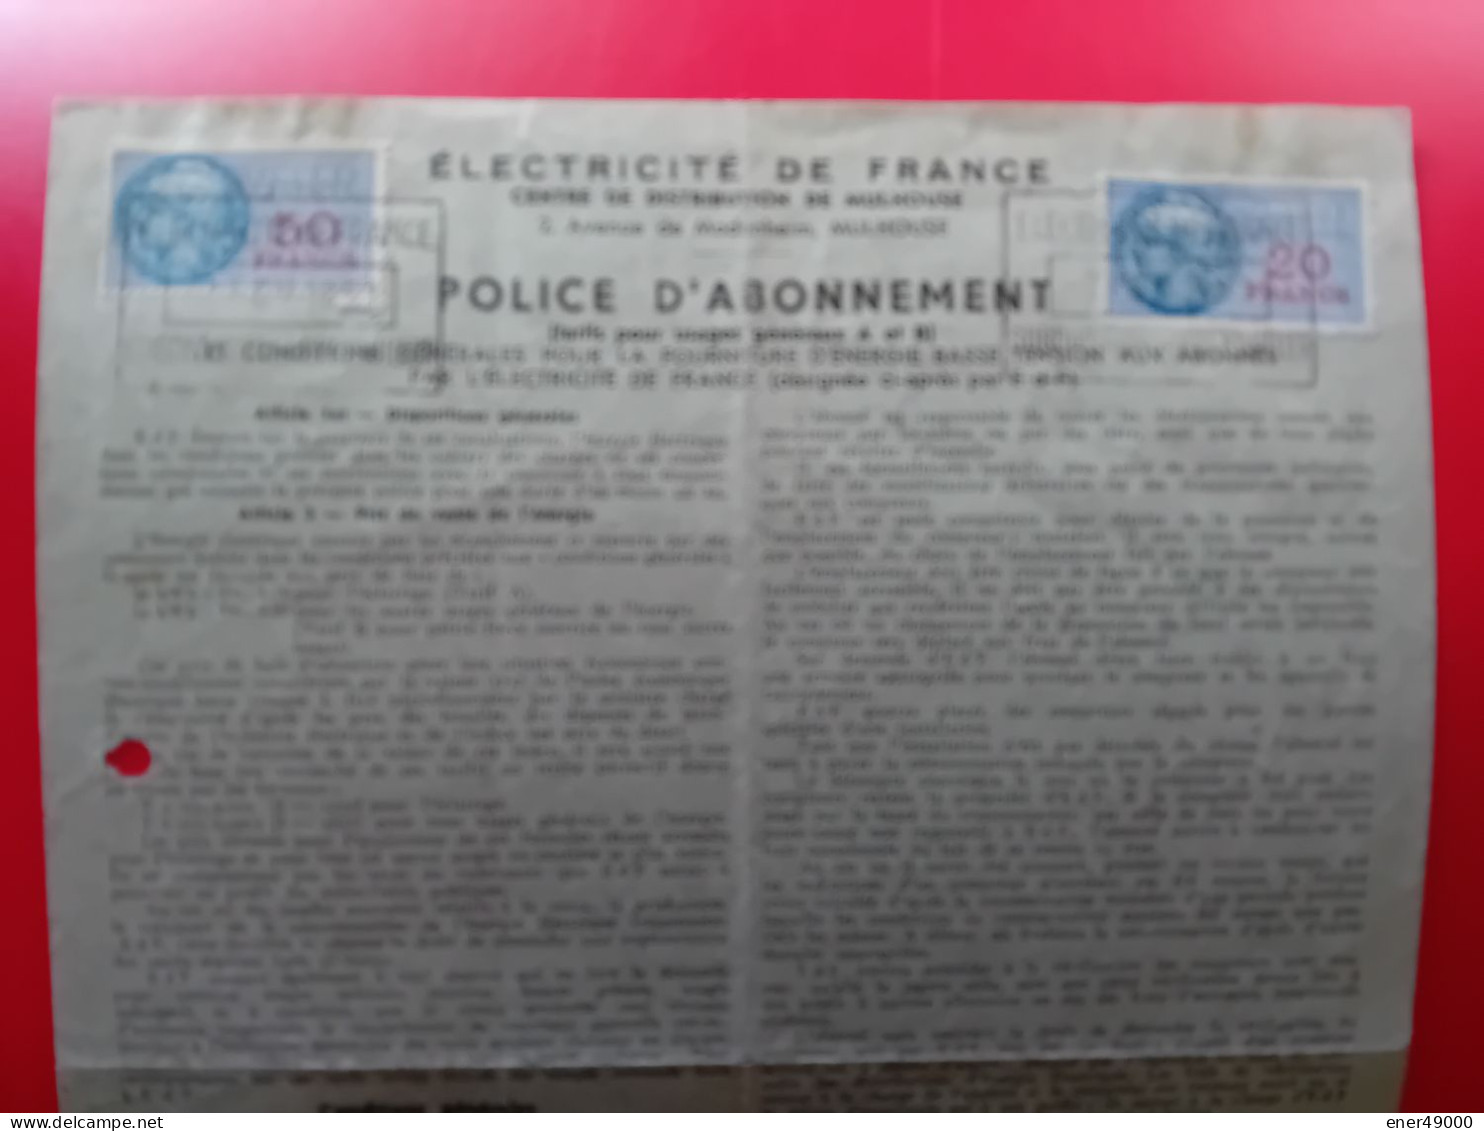 FISCAUX 20 ET 50 F SUR POLICE D'ABONNEMENT ELECTRICITE DE FRANCE 1951 - Briefe U. Dokumente